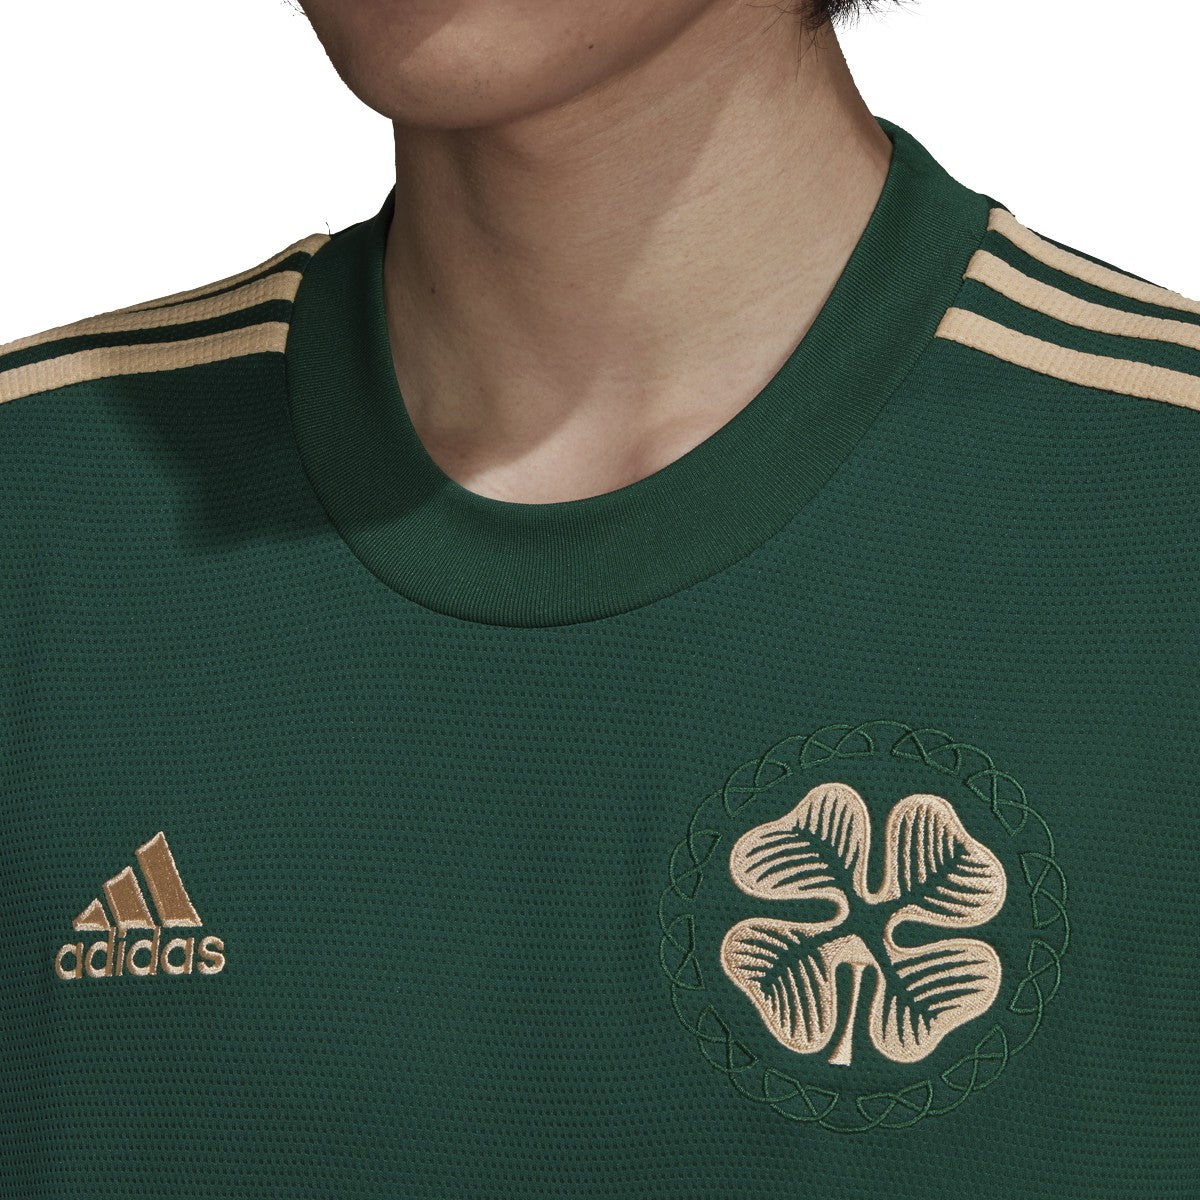 celtics green gold jersey